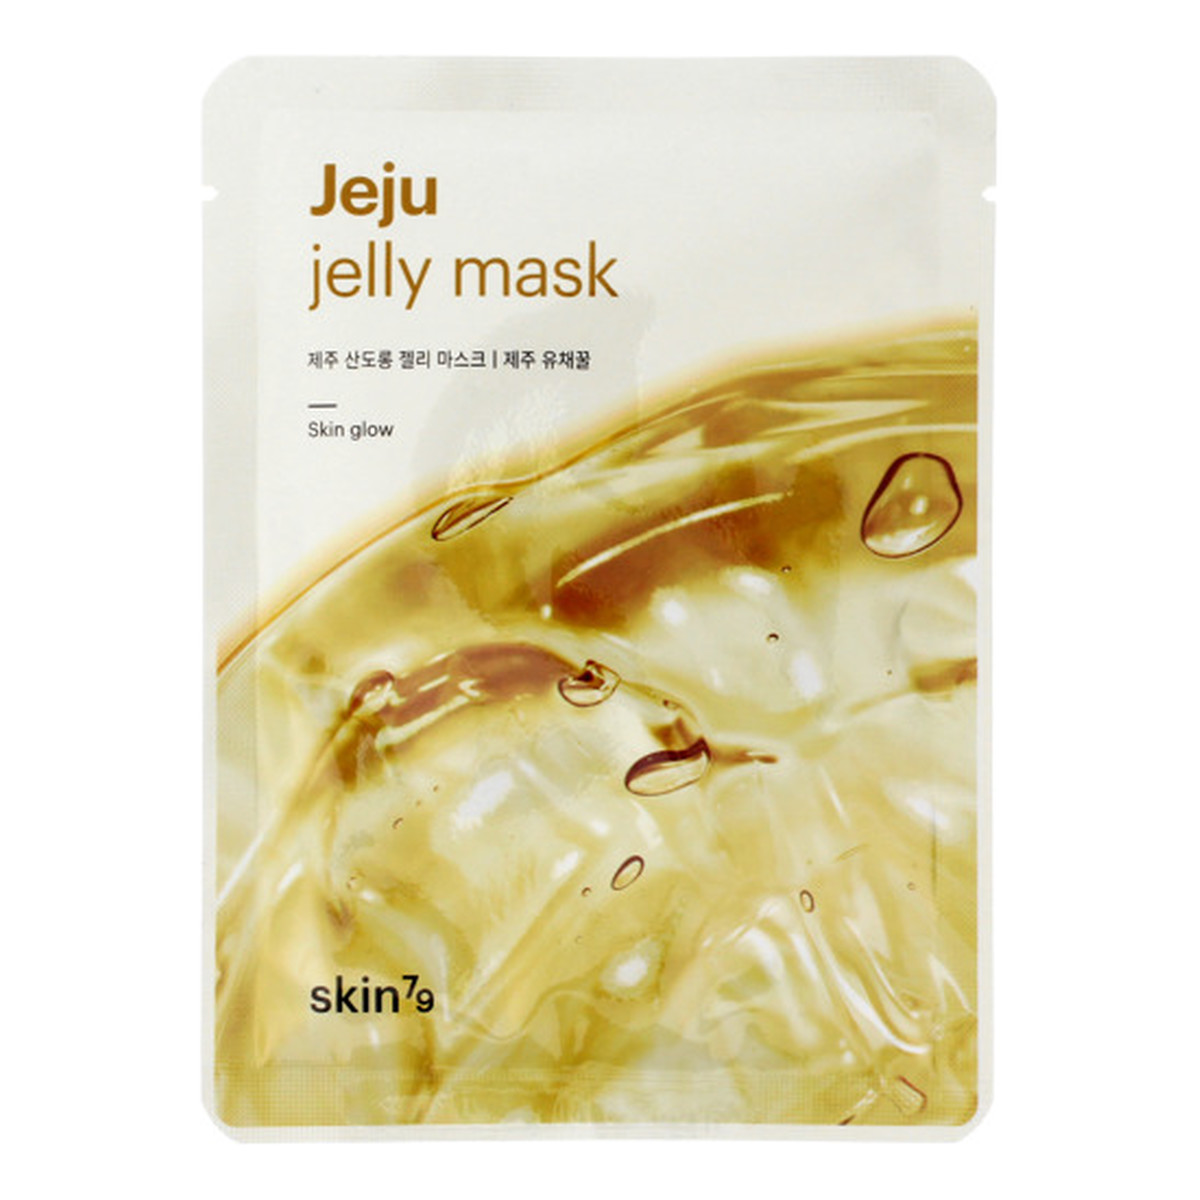 Skin79 Jeju Jelly Mask Canola Honey Maska w płacie Skin Glow 33ml